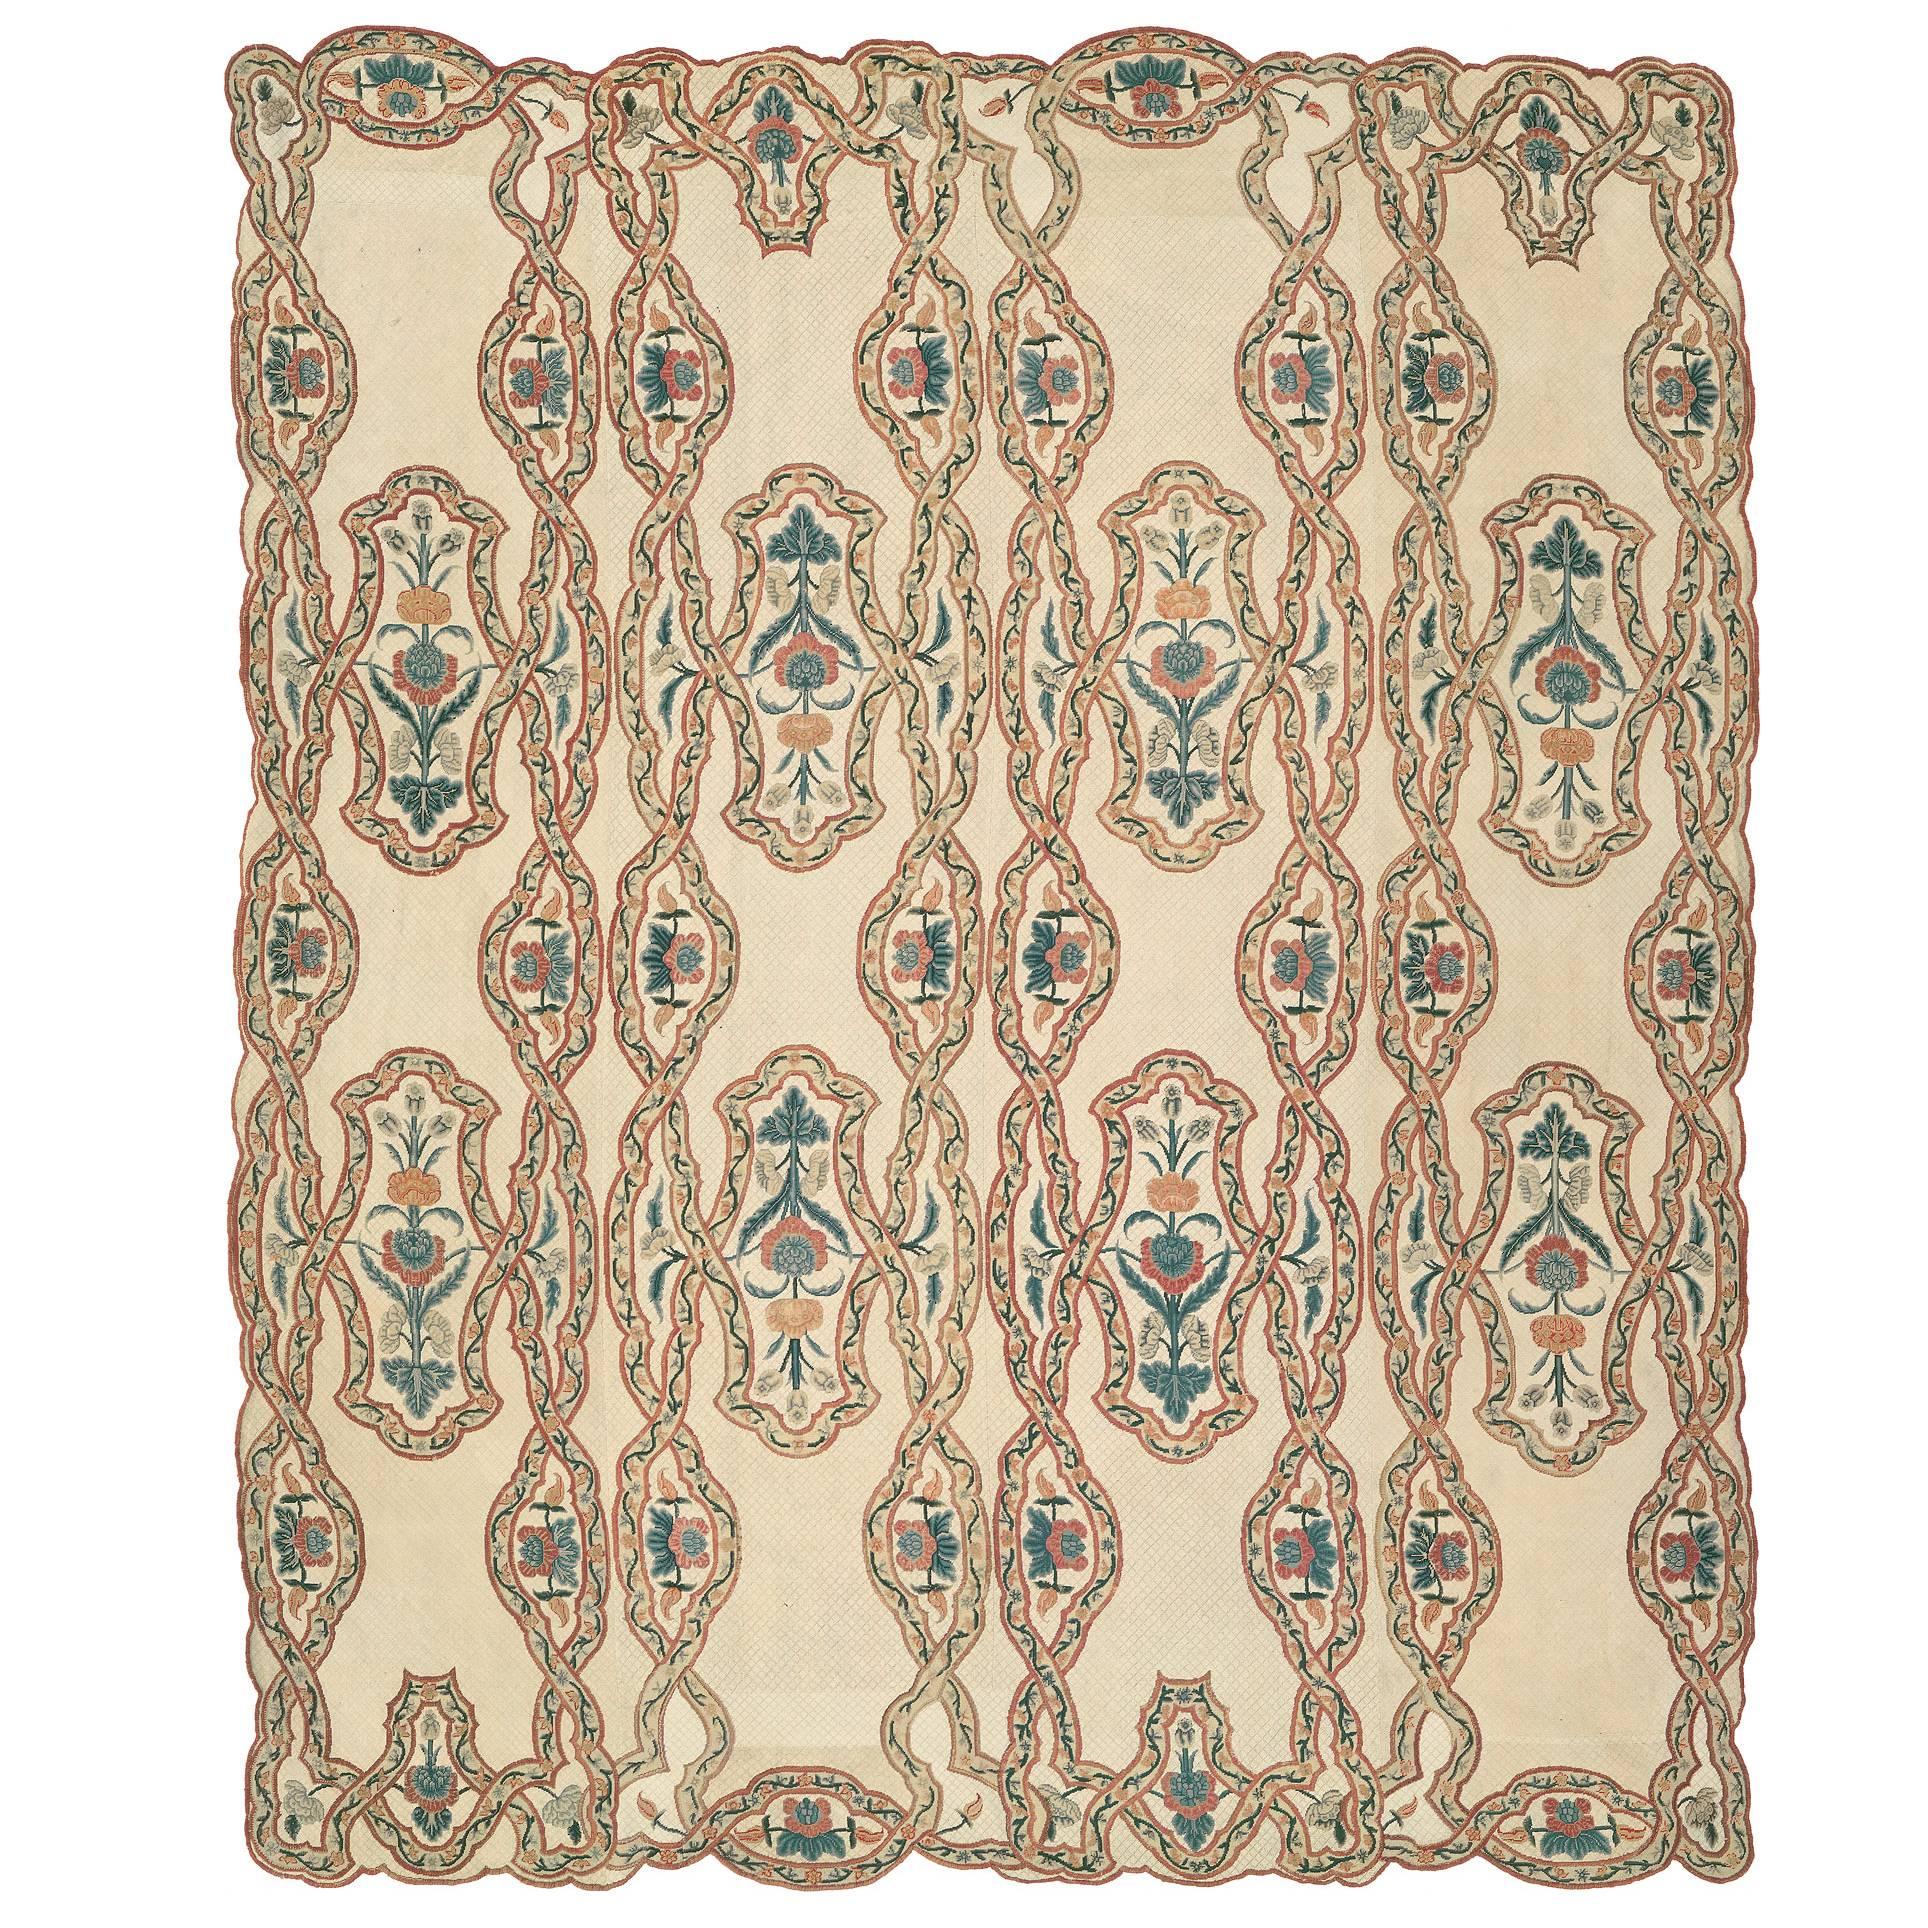 Französischer Teppich mit Stickerei aus dem späten 18. Jahrhundert